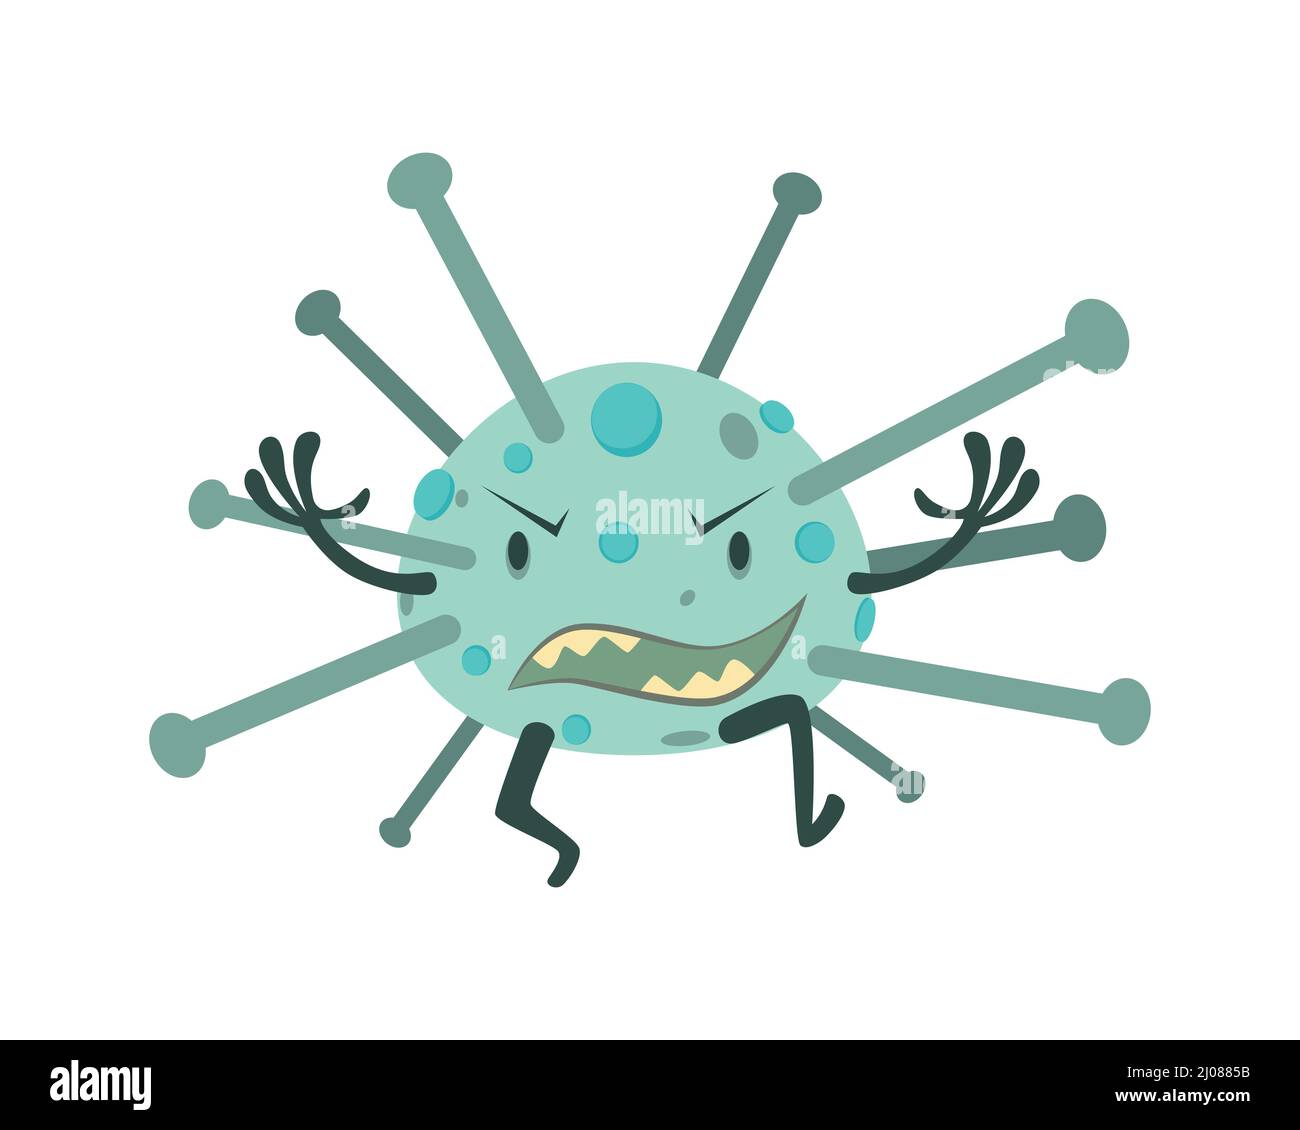 Coronavirus Character Illustration with Cartoon Style Stock Vector